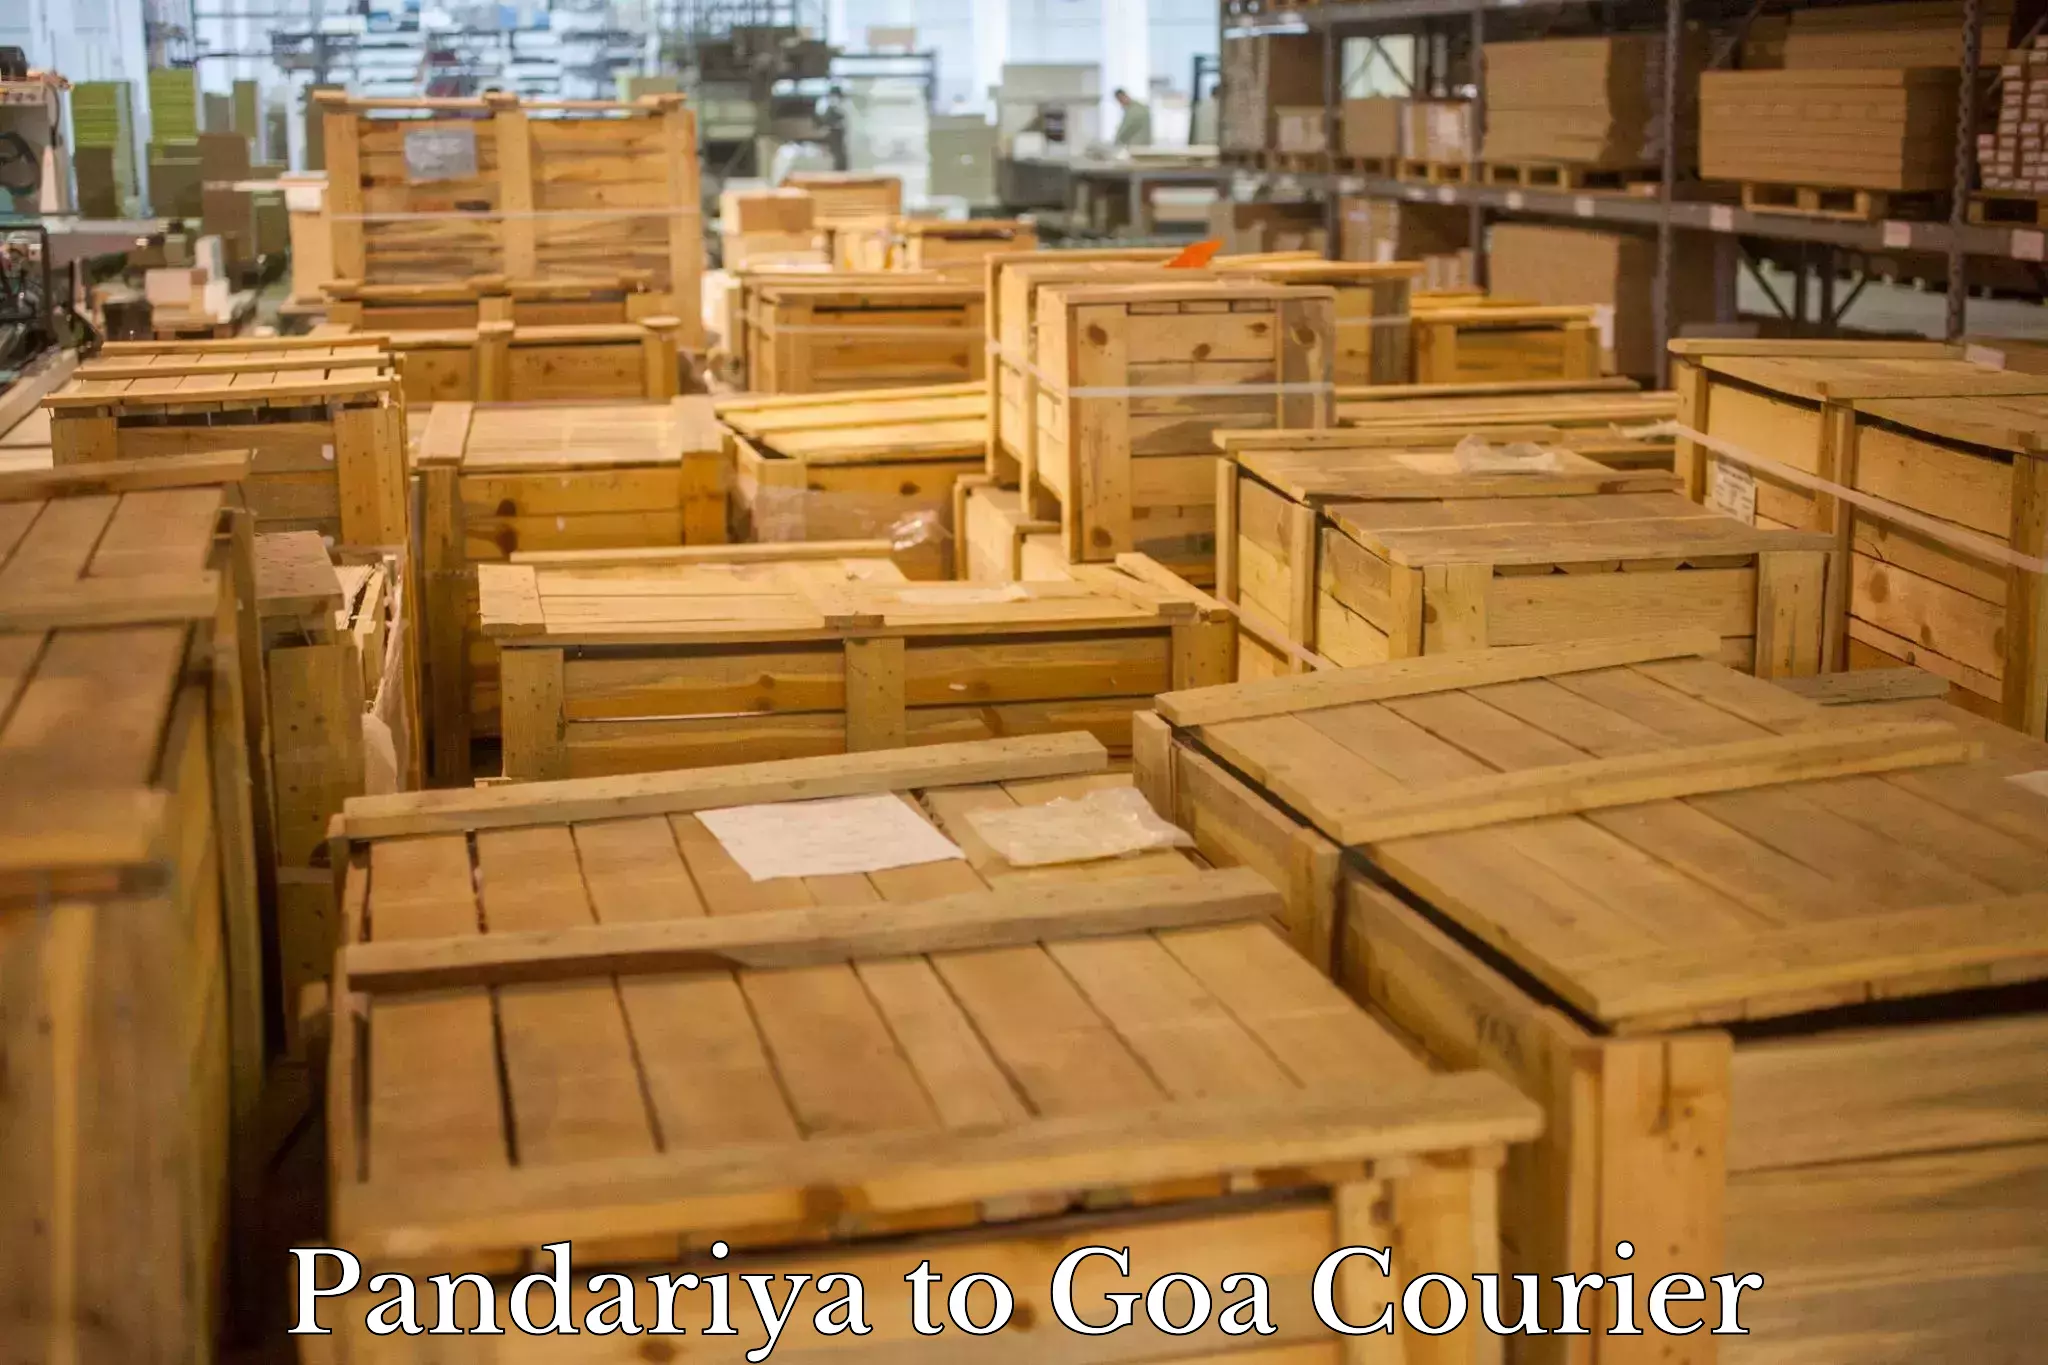 Express courier capabilities Pandariya to Goa